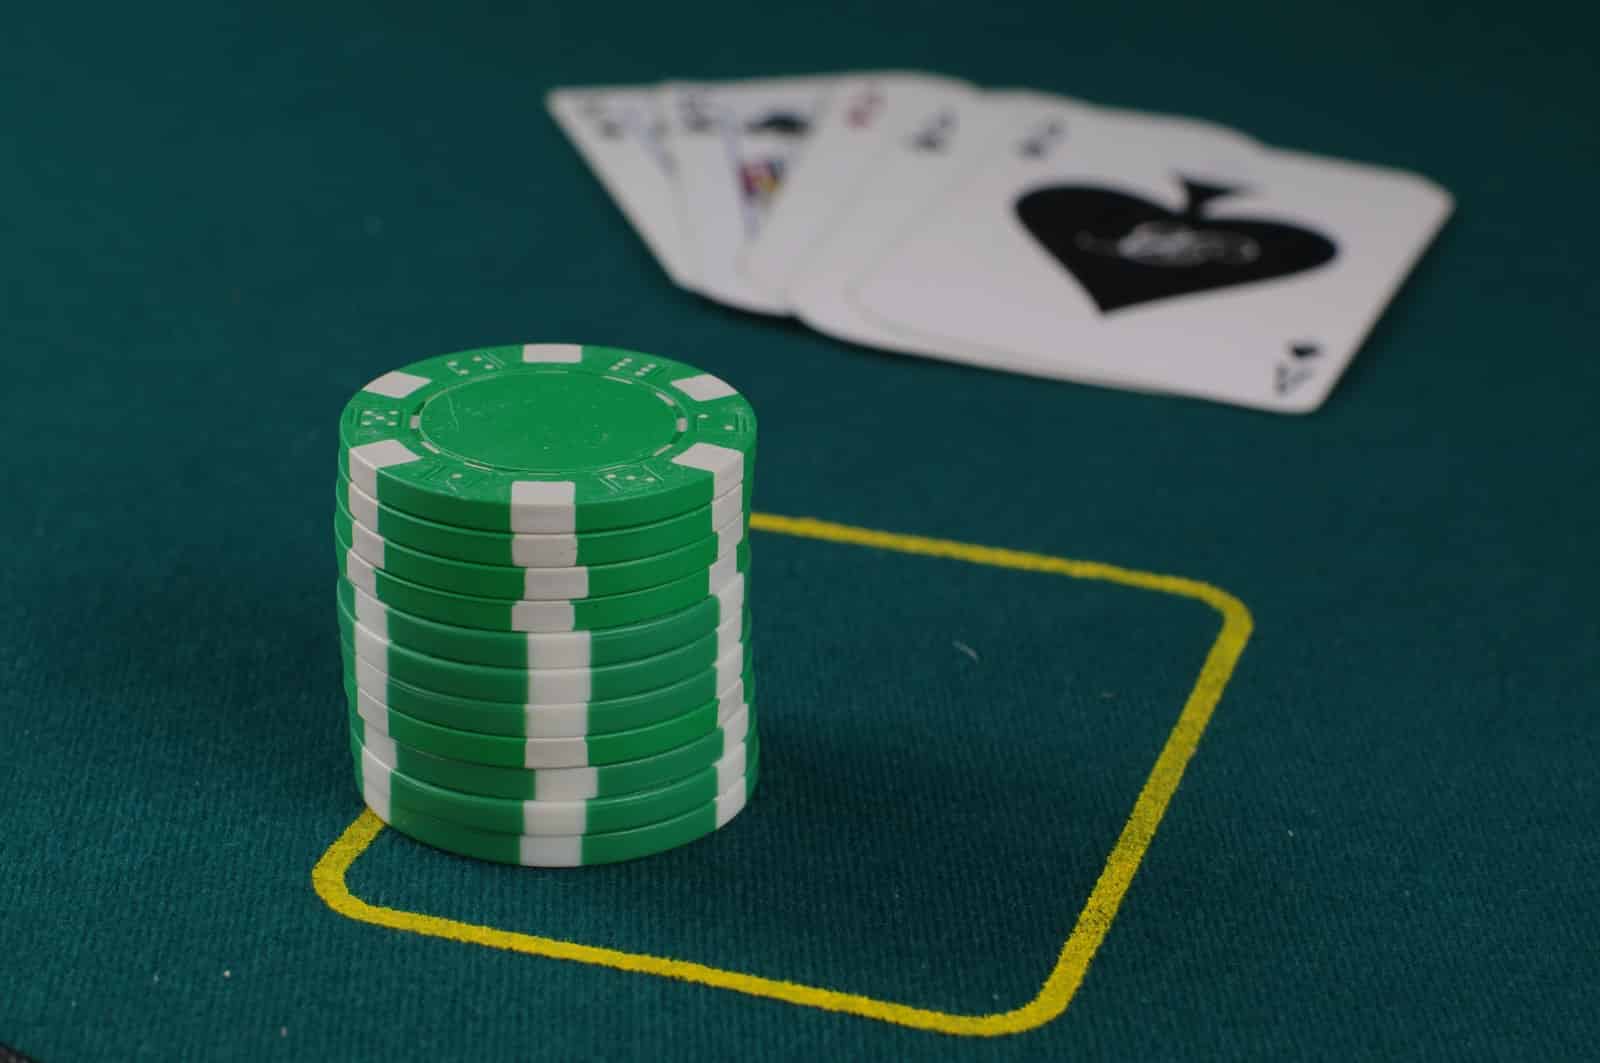 Conseils pour les tournois de poker : les 10 choses que vous devez savoir pour gagner